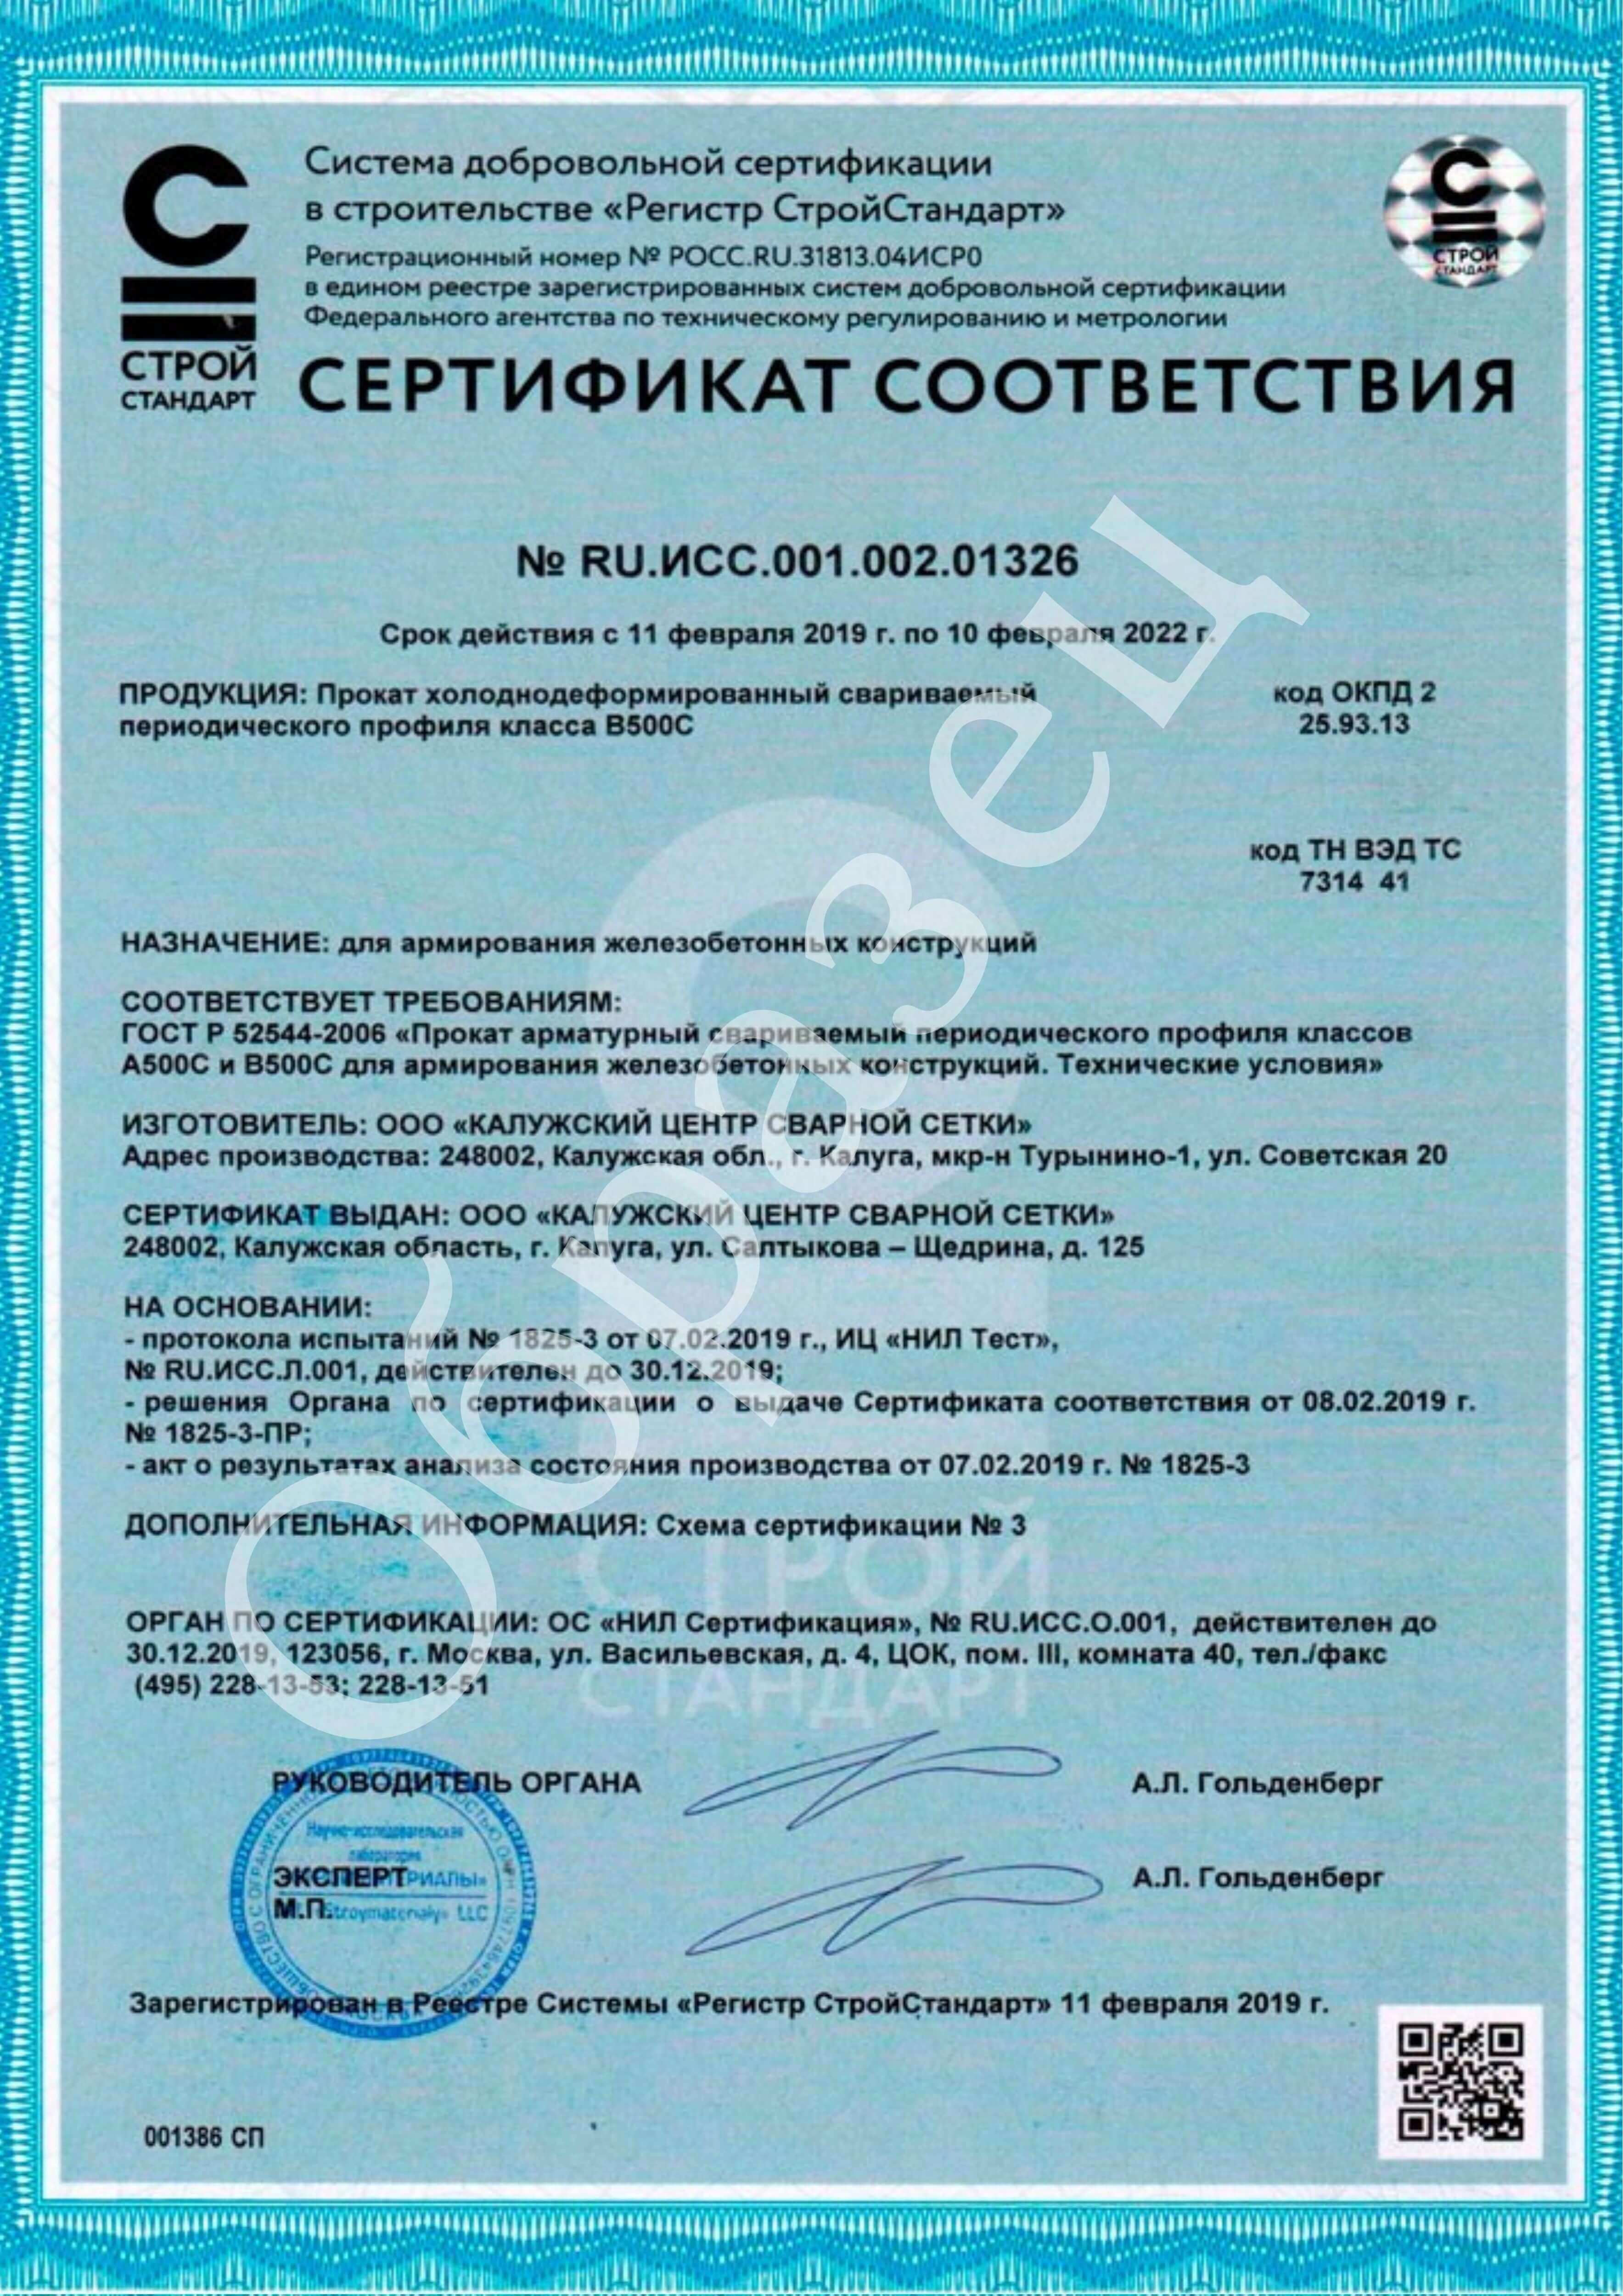 Сертификат ГОСТ